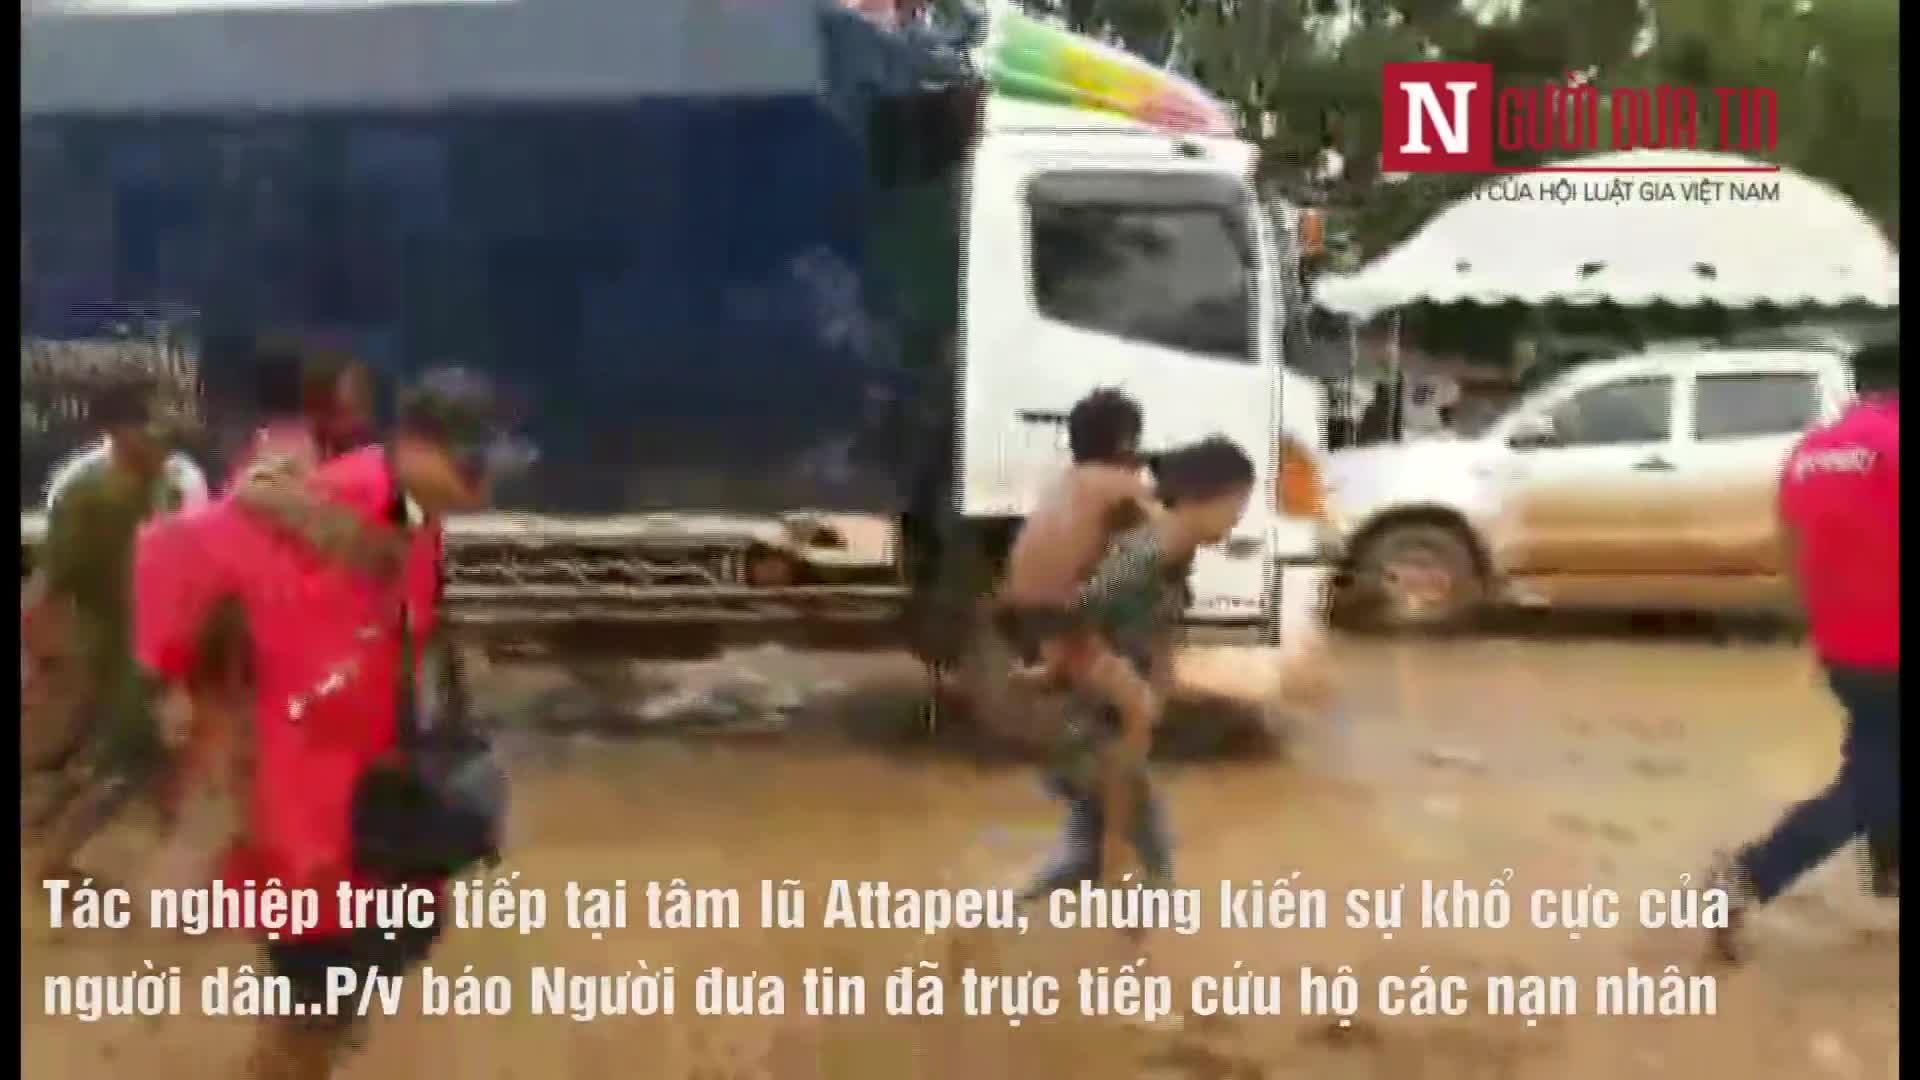 Video PV báo Người Đưa Tin hỗ trợ cứu hộ các nạn nhân tại Attapeu